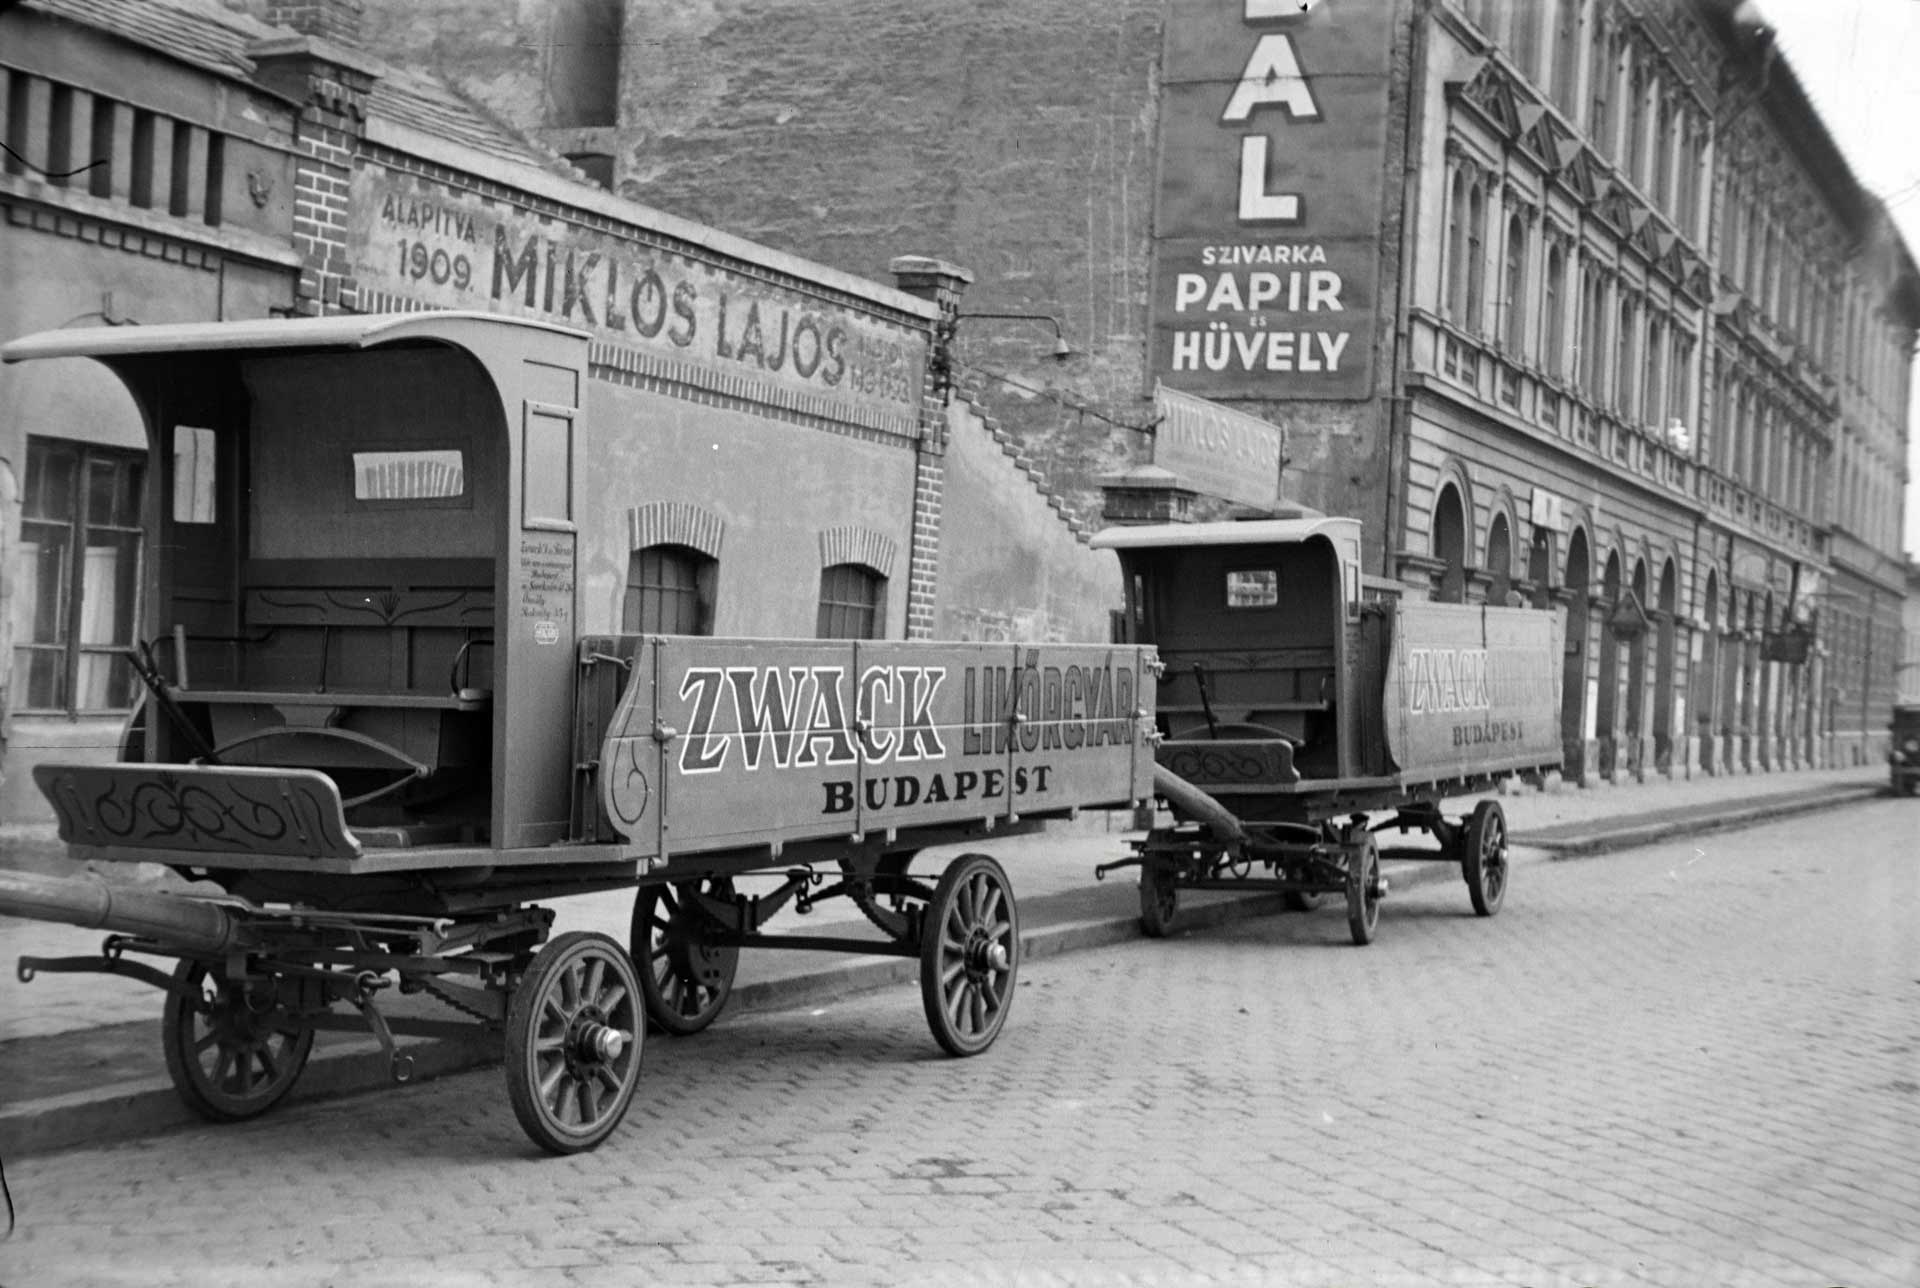 Vaspálya utca 4., Miklós Lajos járműgyártó mester üzeme előtt a Zwack Likőrgyárnak gyártott platós lovaskocsik, 1943 (forrás: Fortepan / Miklós Lajos)